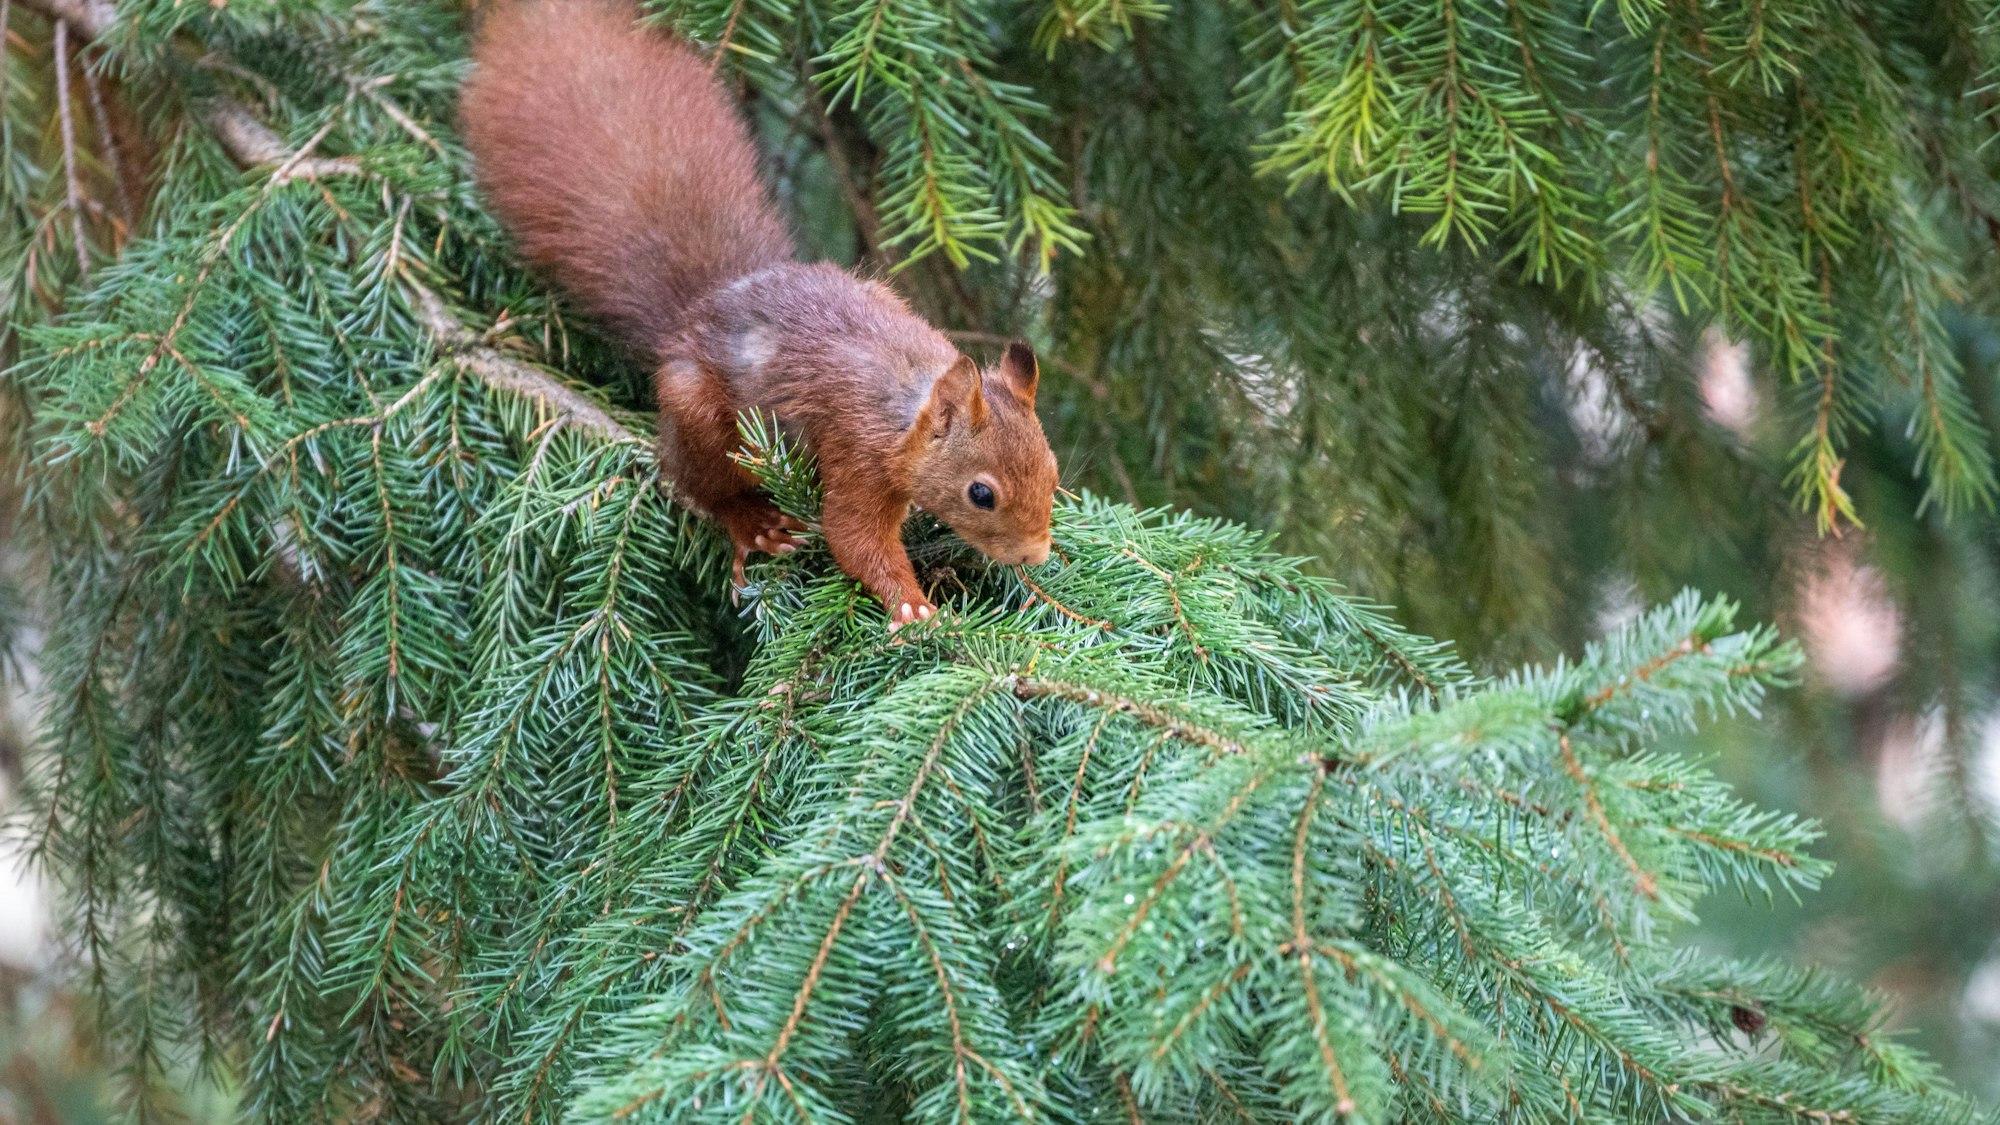 Ein braunes Eichhörnchen sitzt in einem Nadelbaum in einem Innenhof.